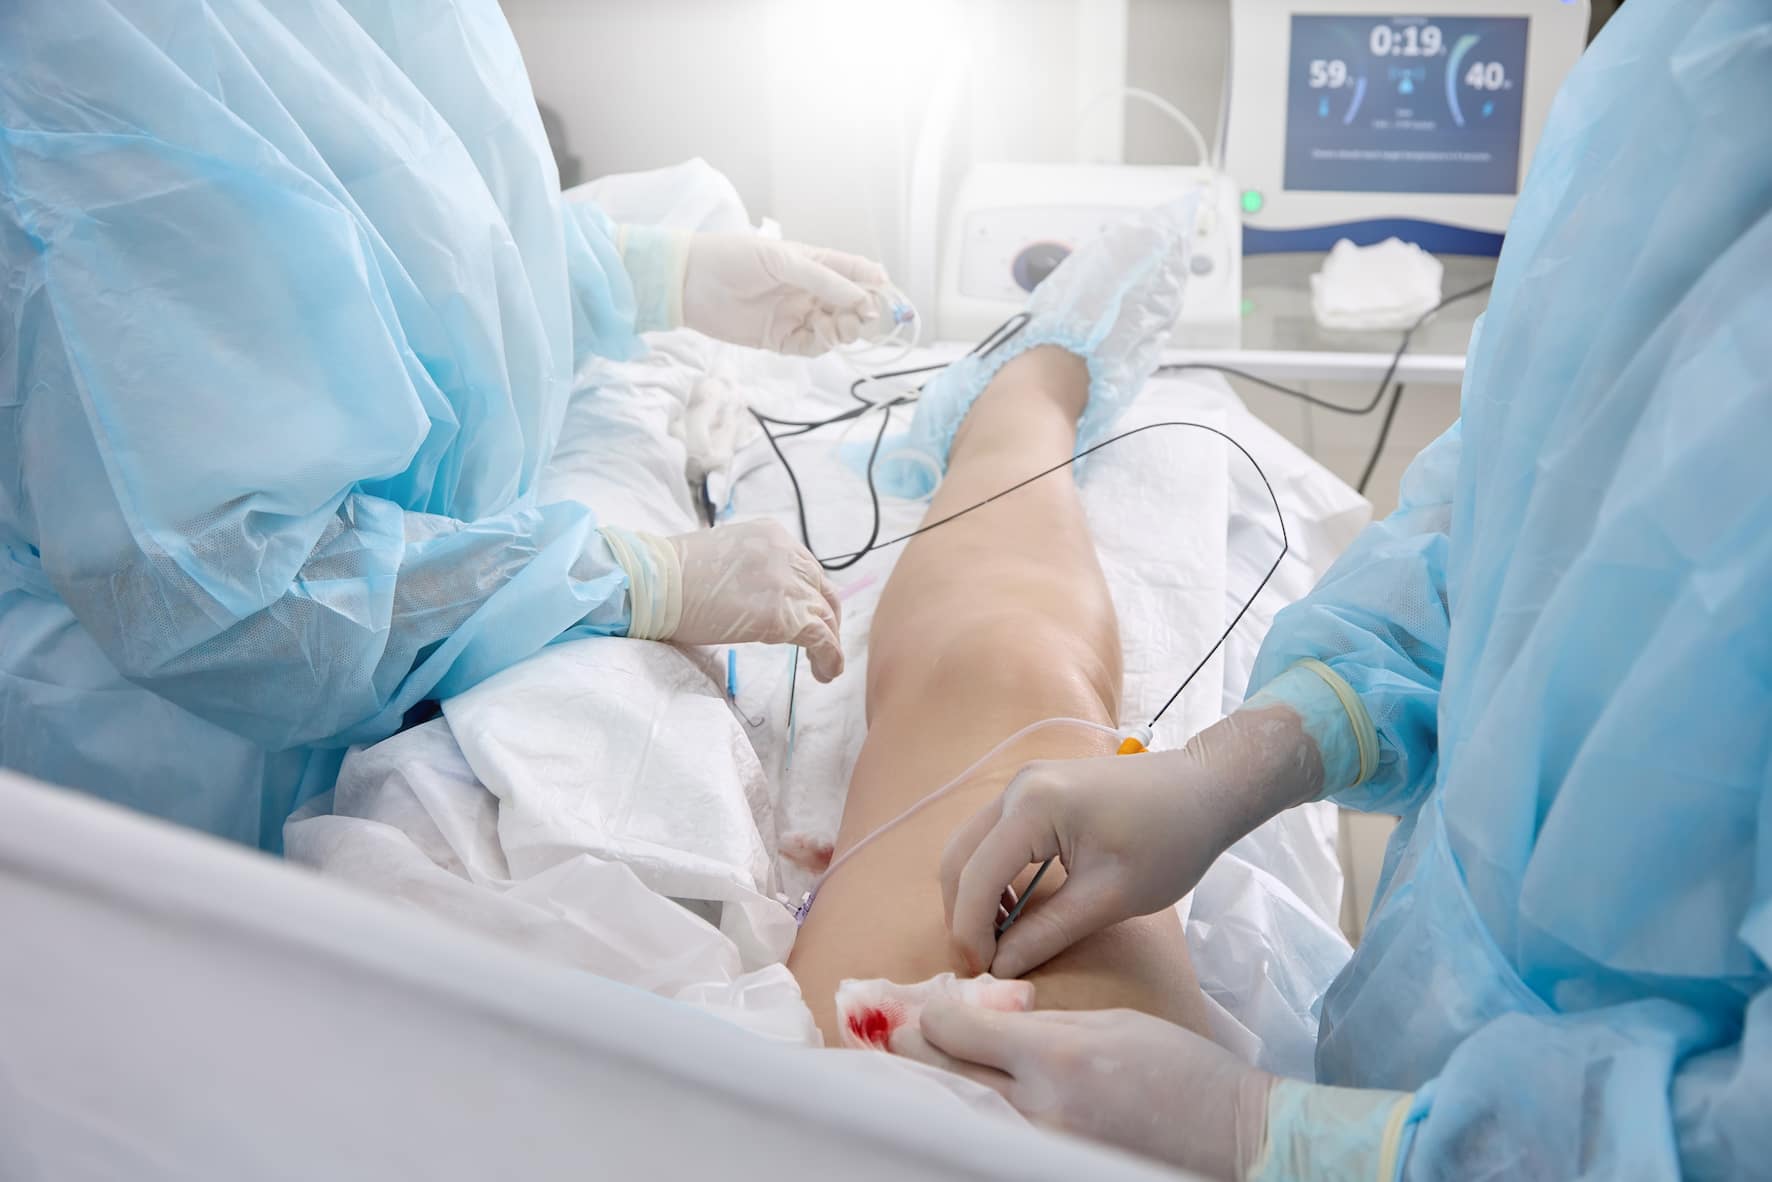 Turkiye cardiac ablation treatment